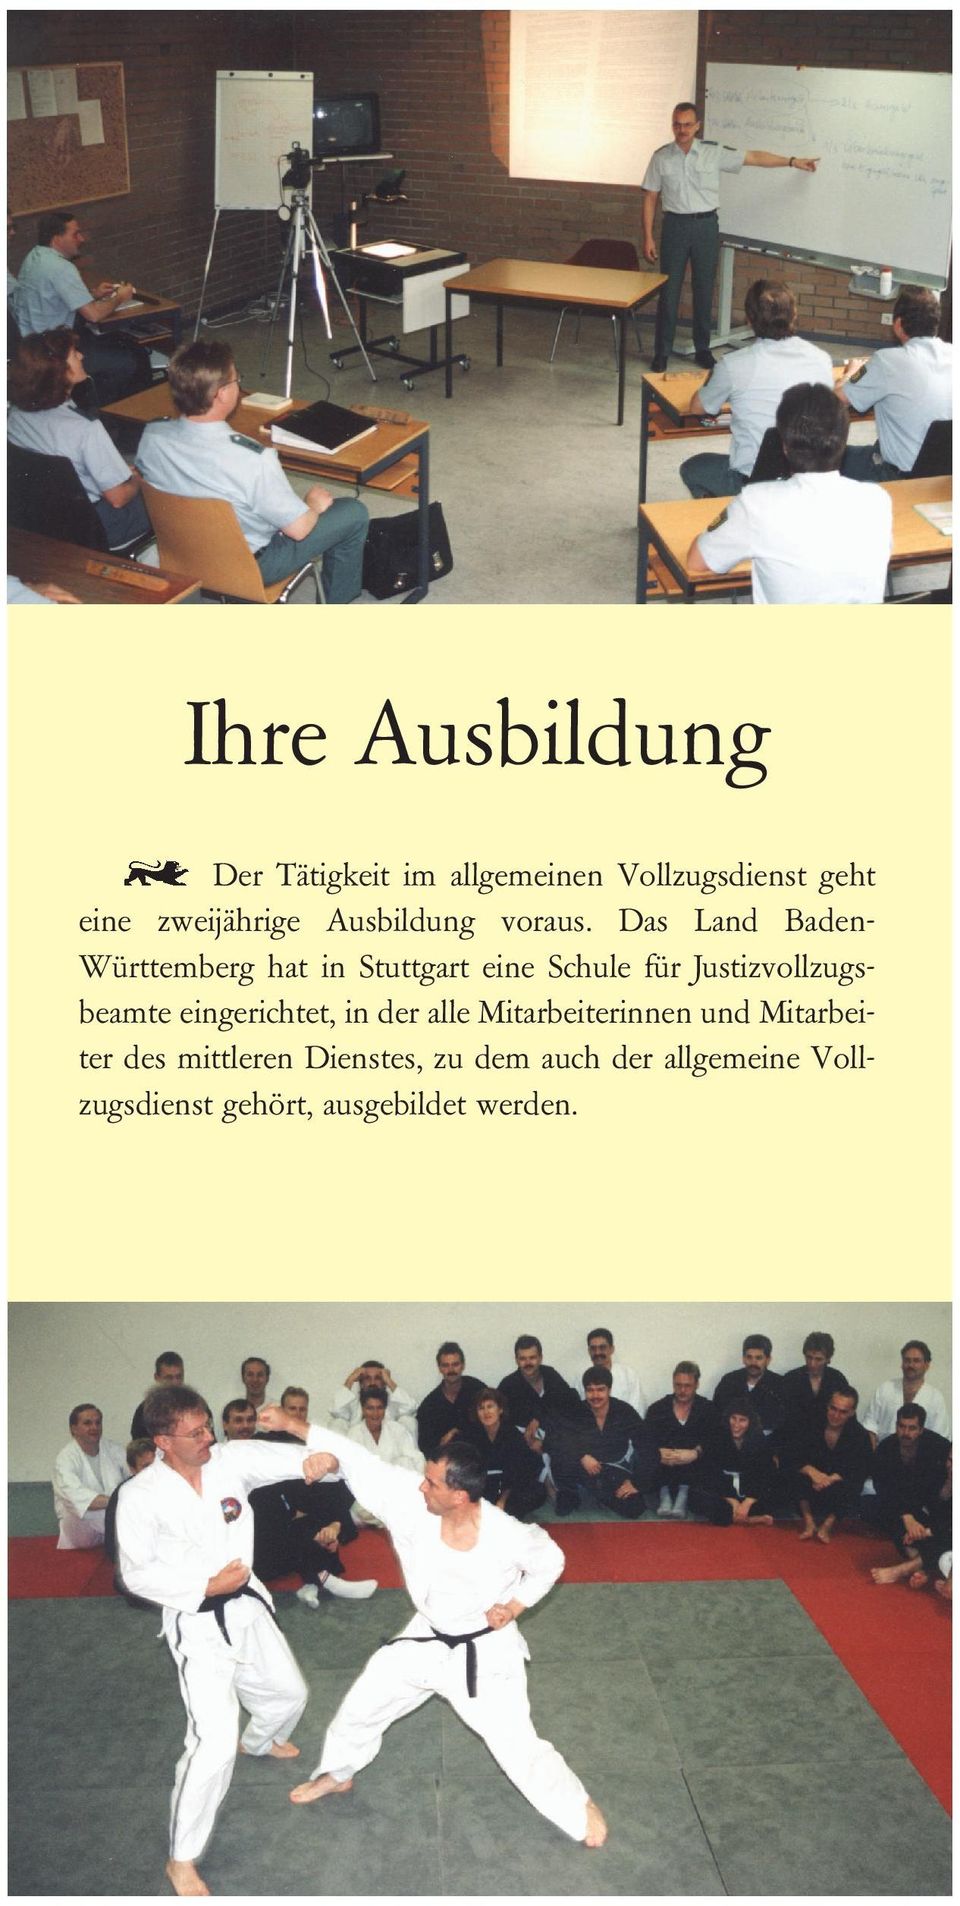 Das Land BadenWürttemberg hat in Stuttgart eine Schule für Justizvollzugsbeamte